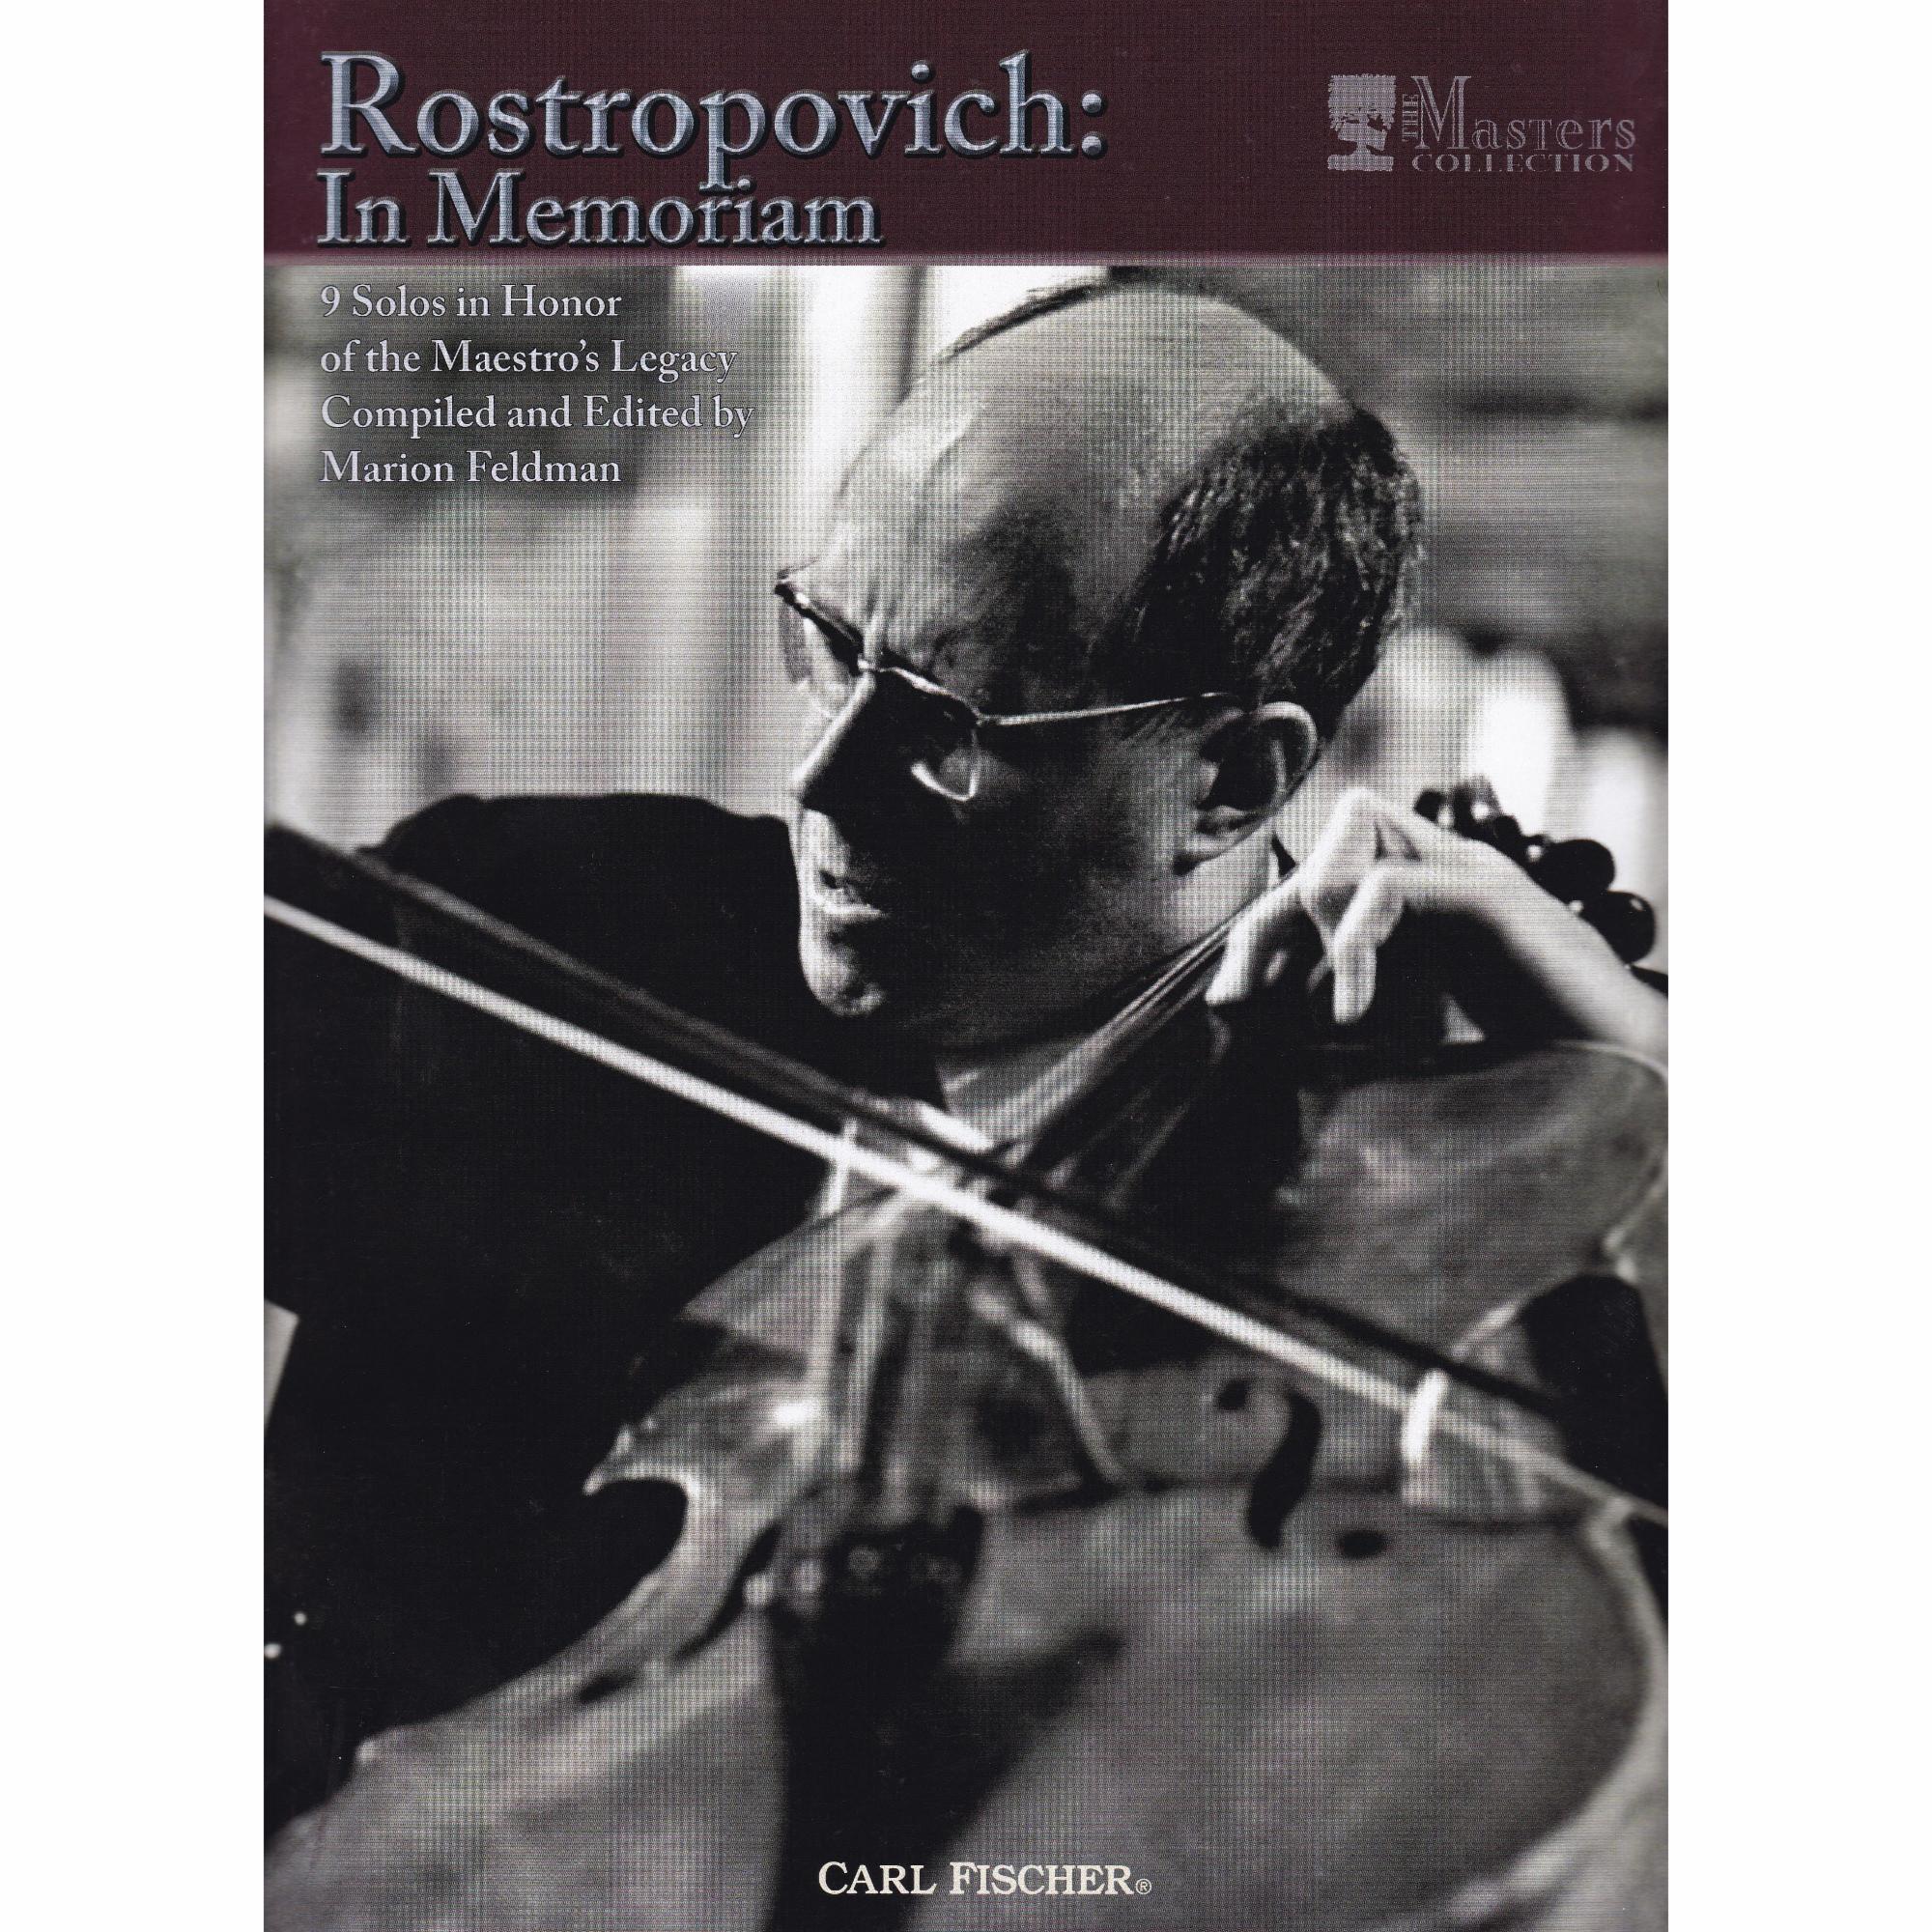 Mstislav Rostropovich: In Memoriam